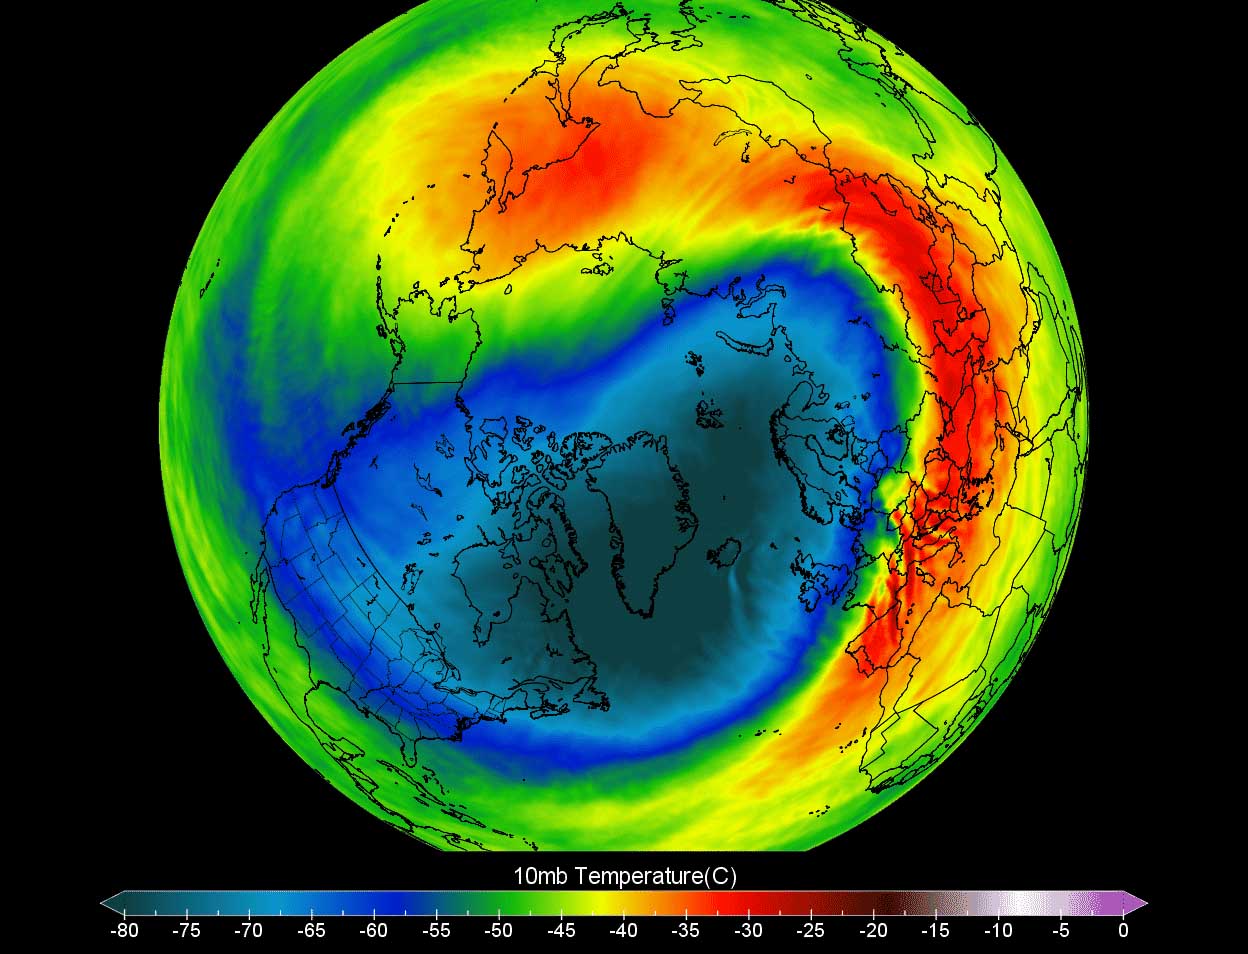 polar-vortex-2022-extreme-temperature-winter-storm-nancy-oaklee-united-states-stratosphere